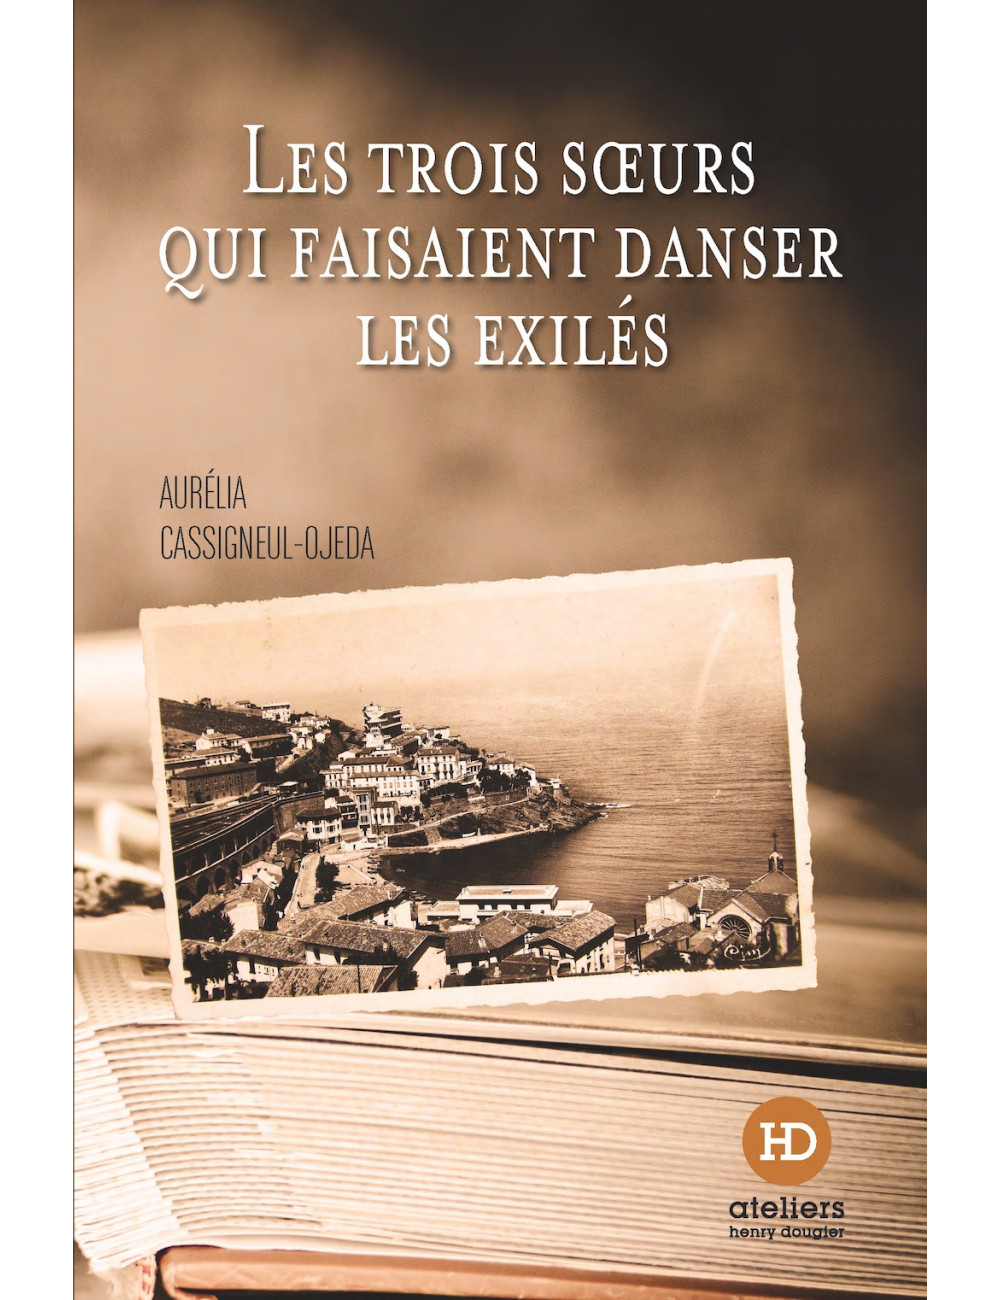 le livre Les Trois Sœurs qui faisaient danser les exilés d'Aurélia Cassigneul-Ojeda ateliers henry dougier